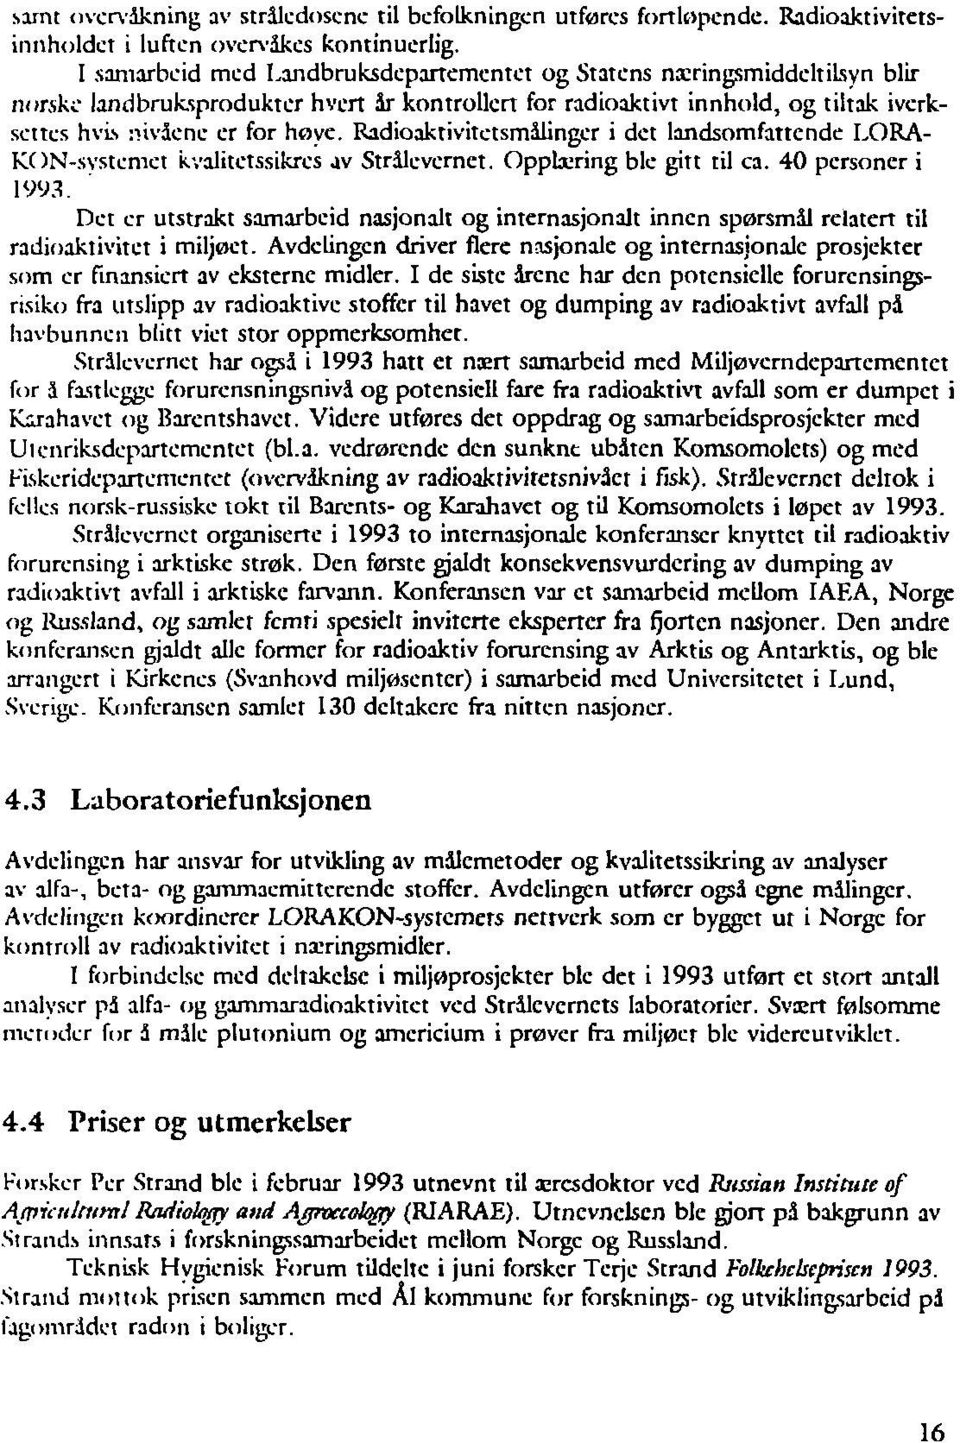 Radioaktivitctsmålingcr i det landsomfattcnde LORA- KON-svstcmct kvalitetssikres av Strålevernet. Opplæring ble gitt til ca. 40 personer i 1993.